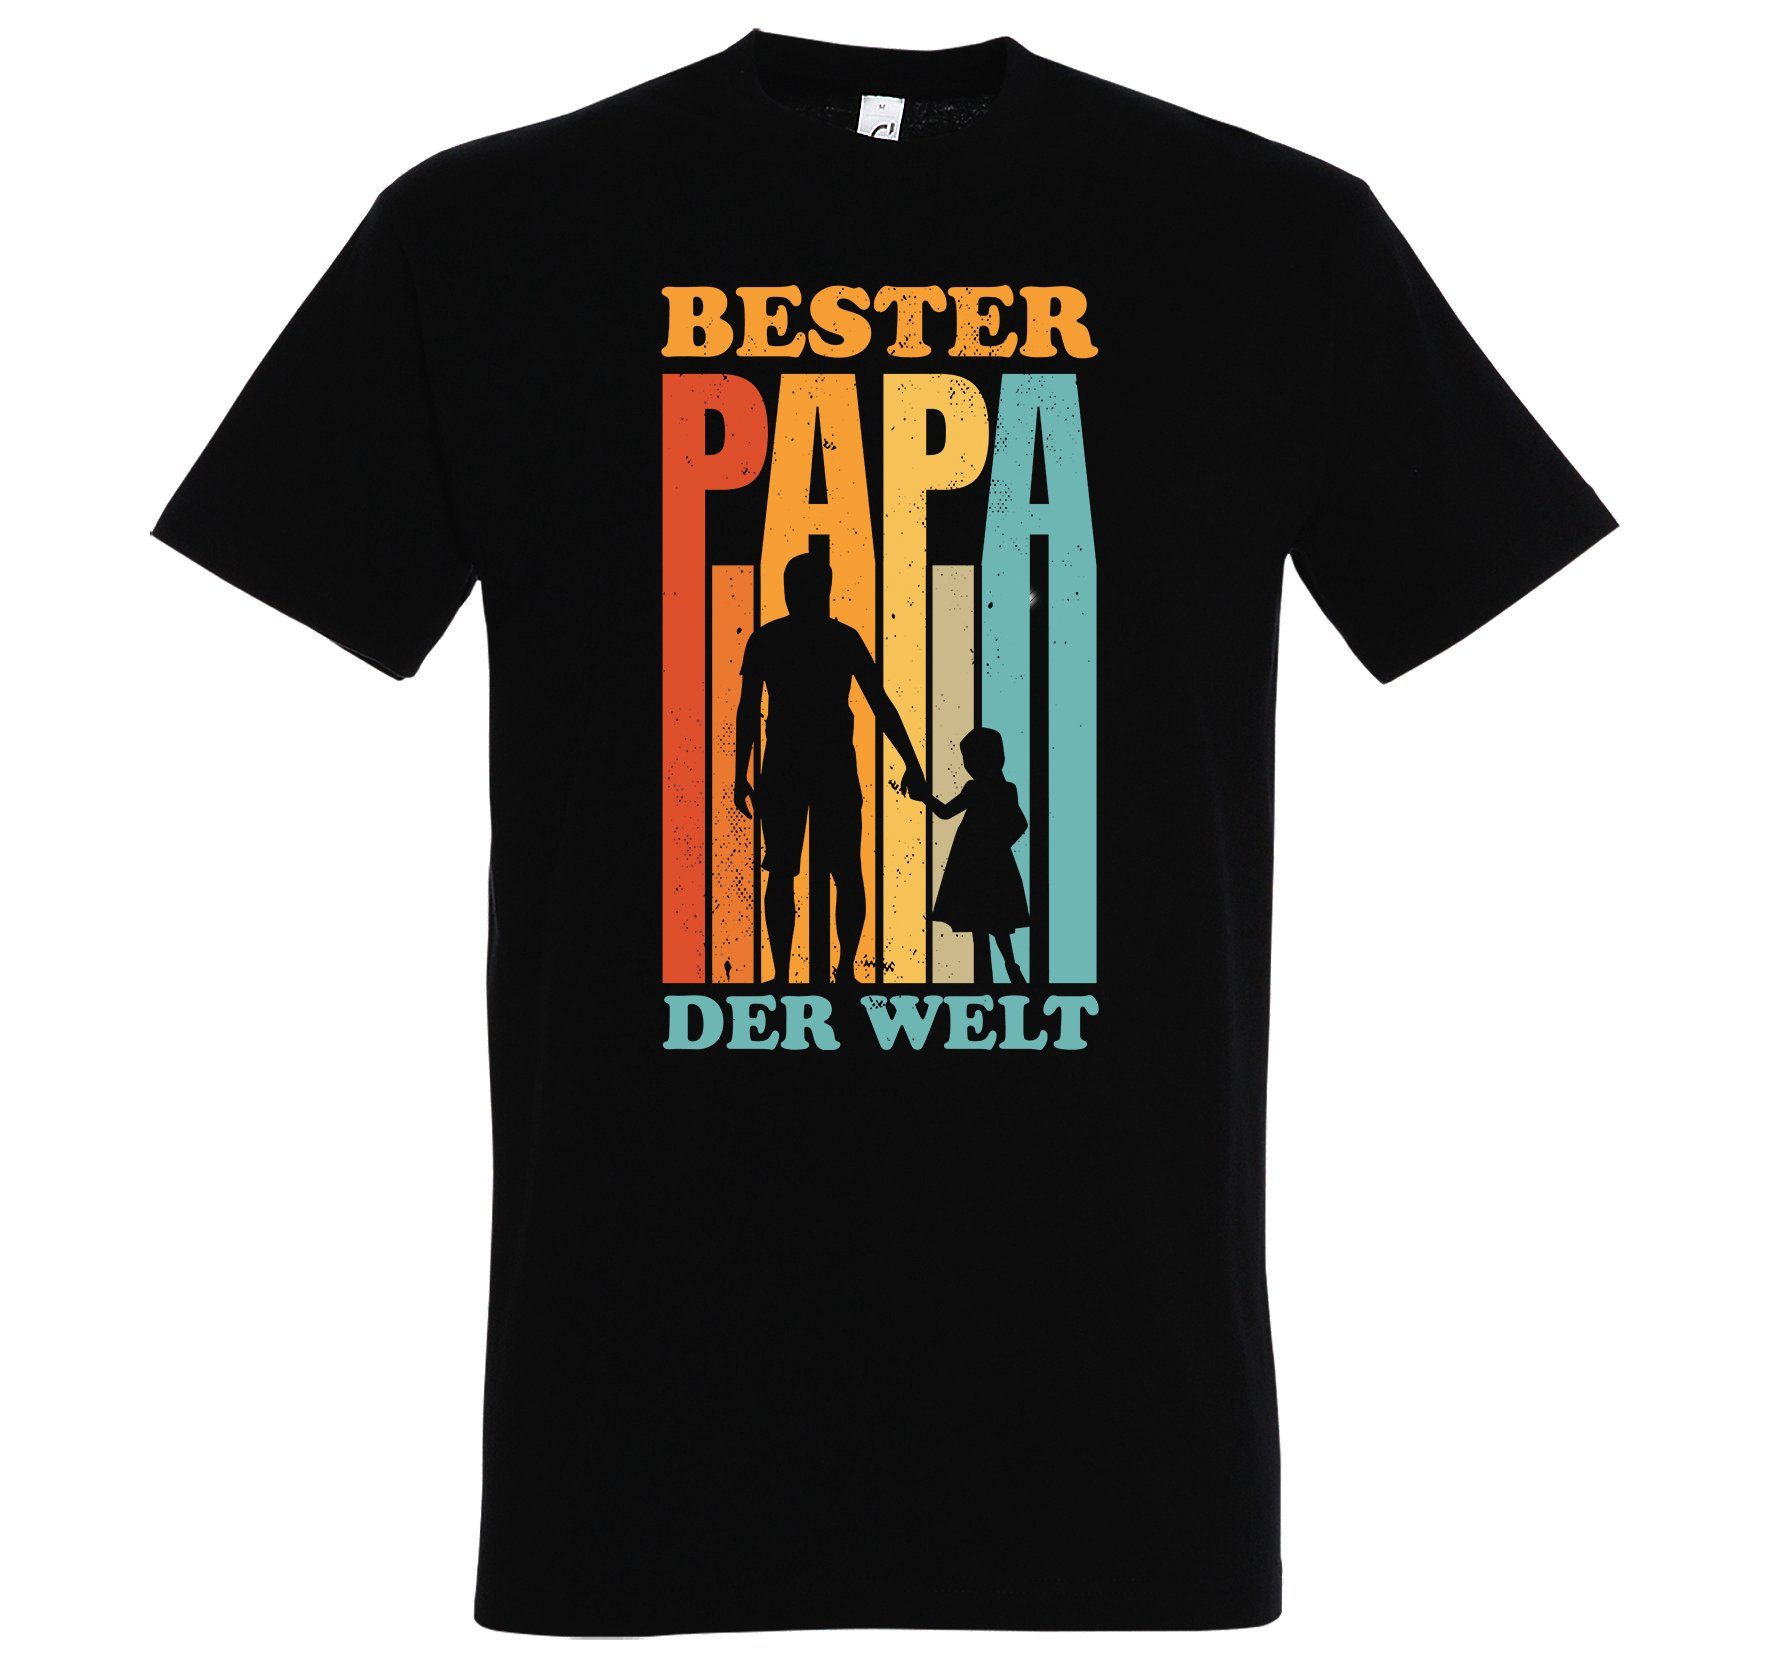 Designz Print Schwarz Welt" Youth Herren T-Shirt Spruch Papa T-Shirt mit "Bester der